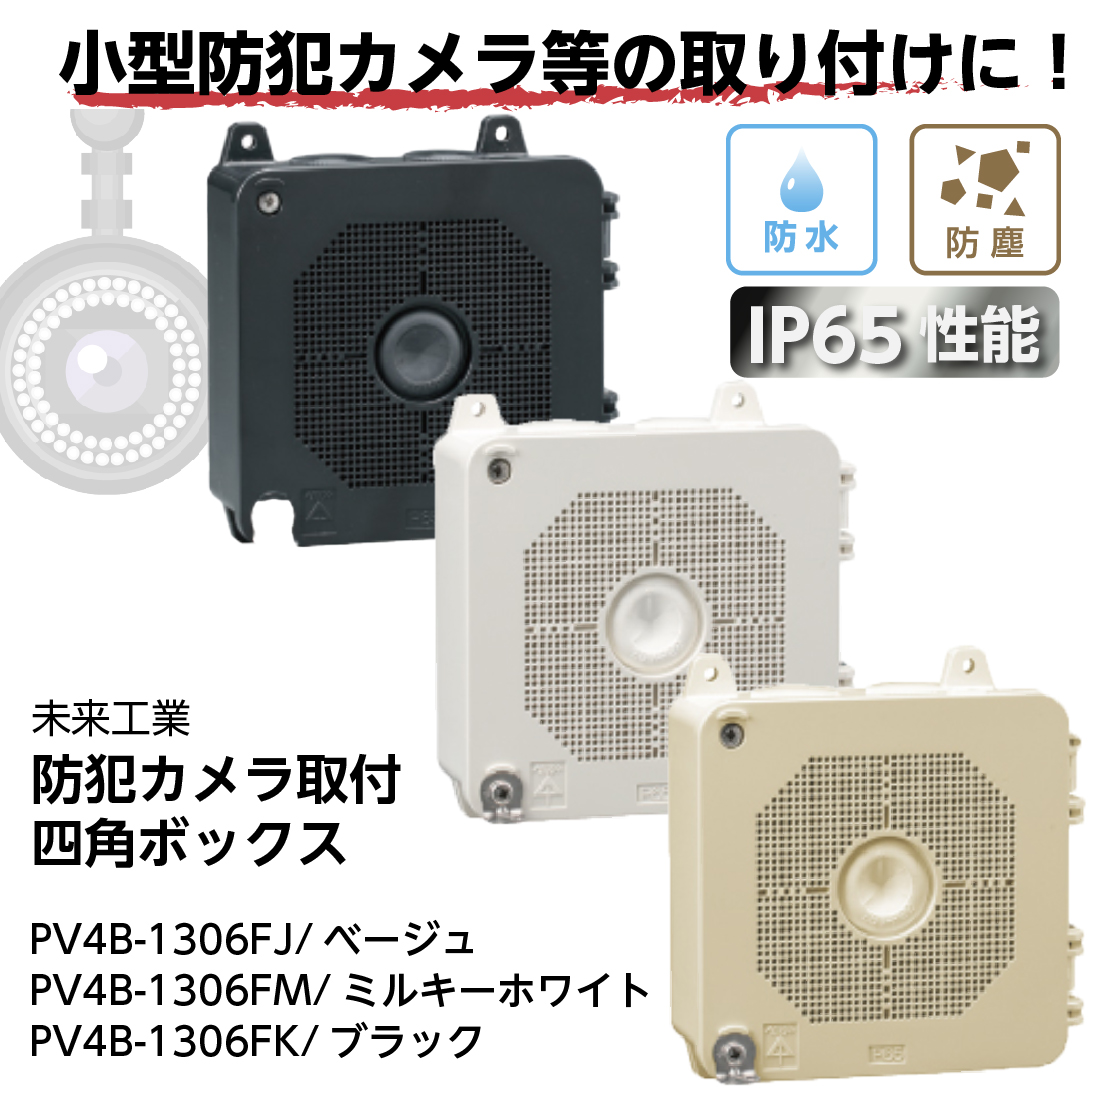 PV4B-1306F 防犯カメラ取付四角ボックス IP65性能 ベージュ ミルキー ホワイト ブラック 未来工業